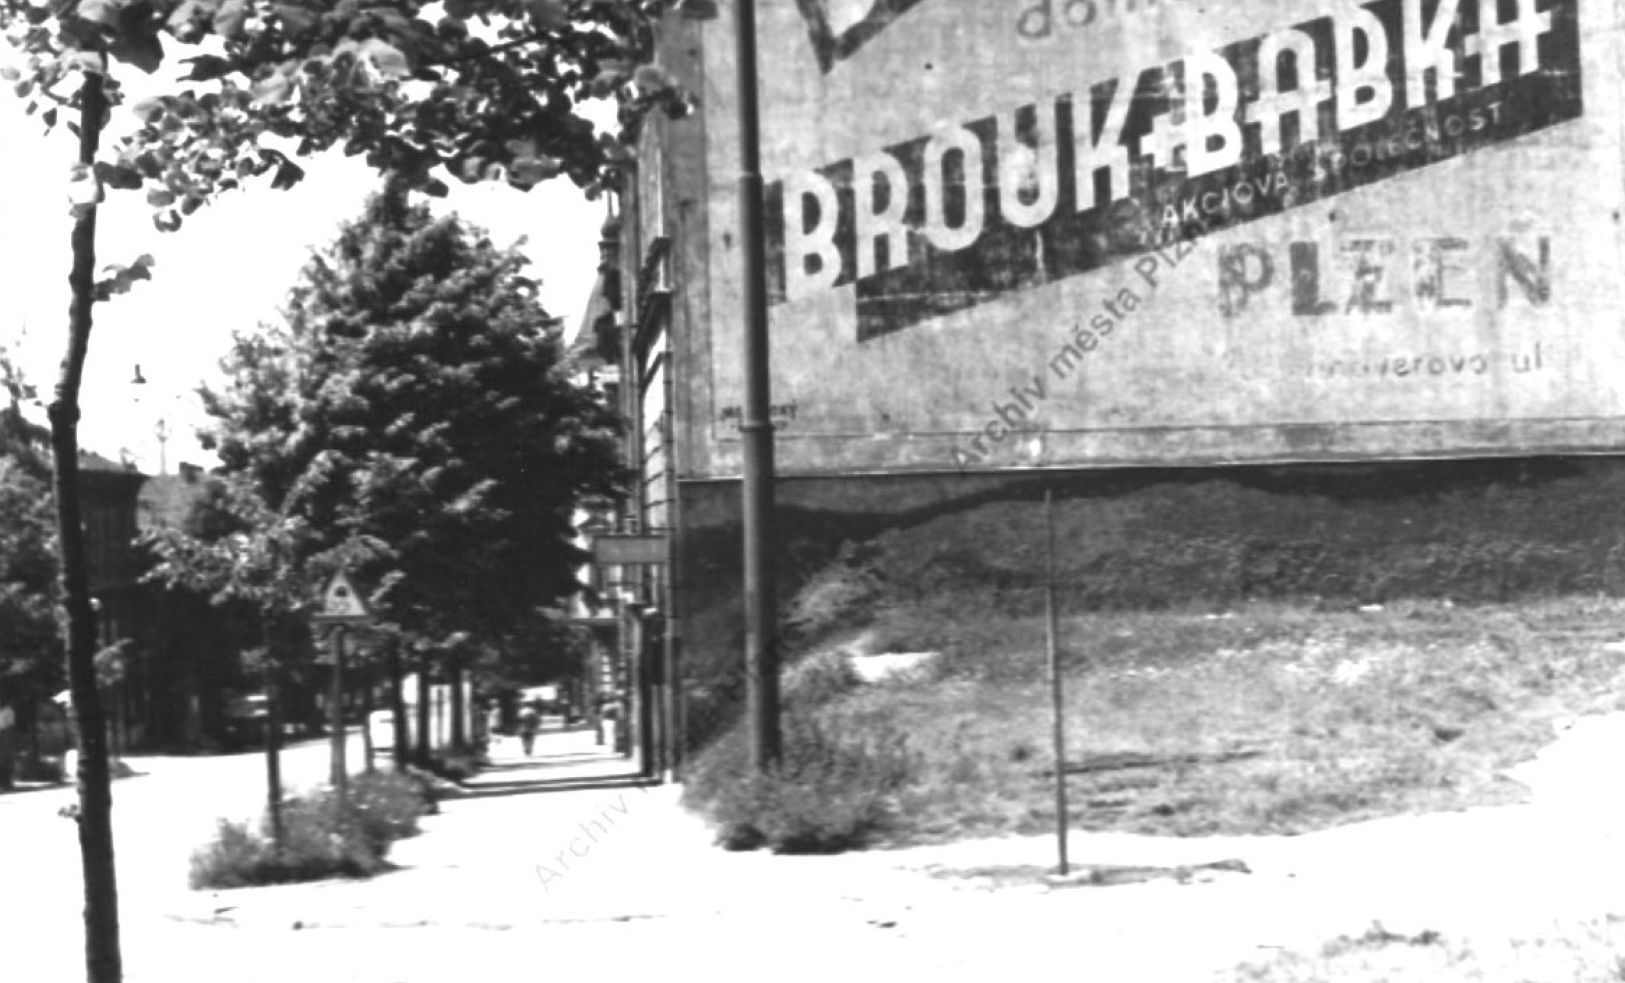 Reklama na OD Brouk a Babka (Plzeň, nedatováno), foto Martínek, Archiv města Plzně